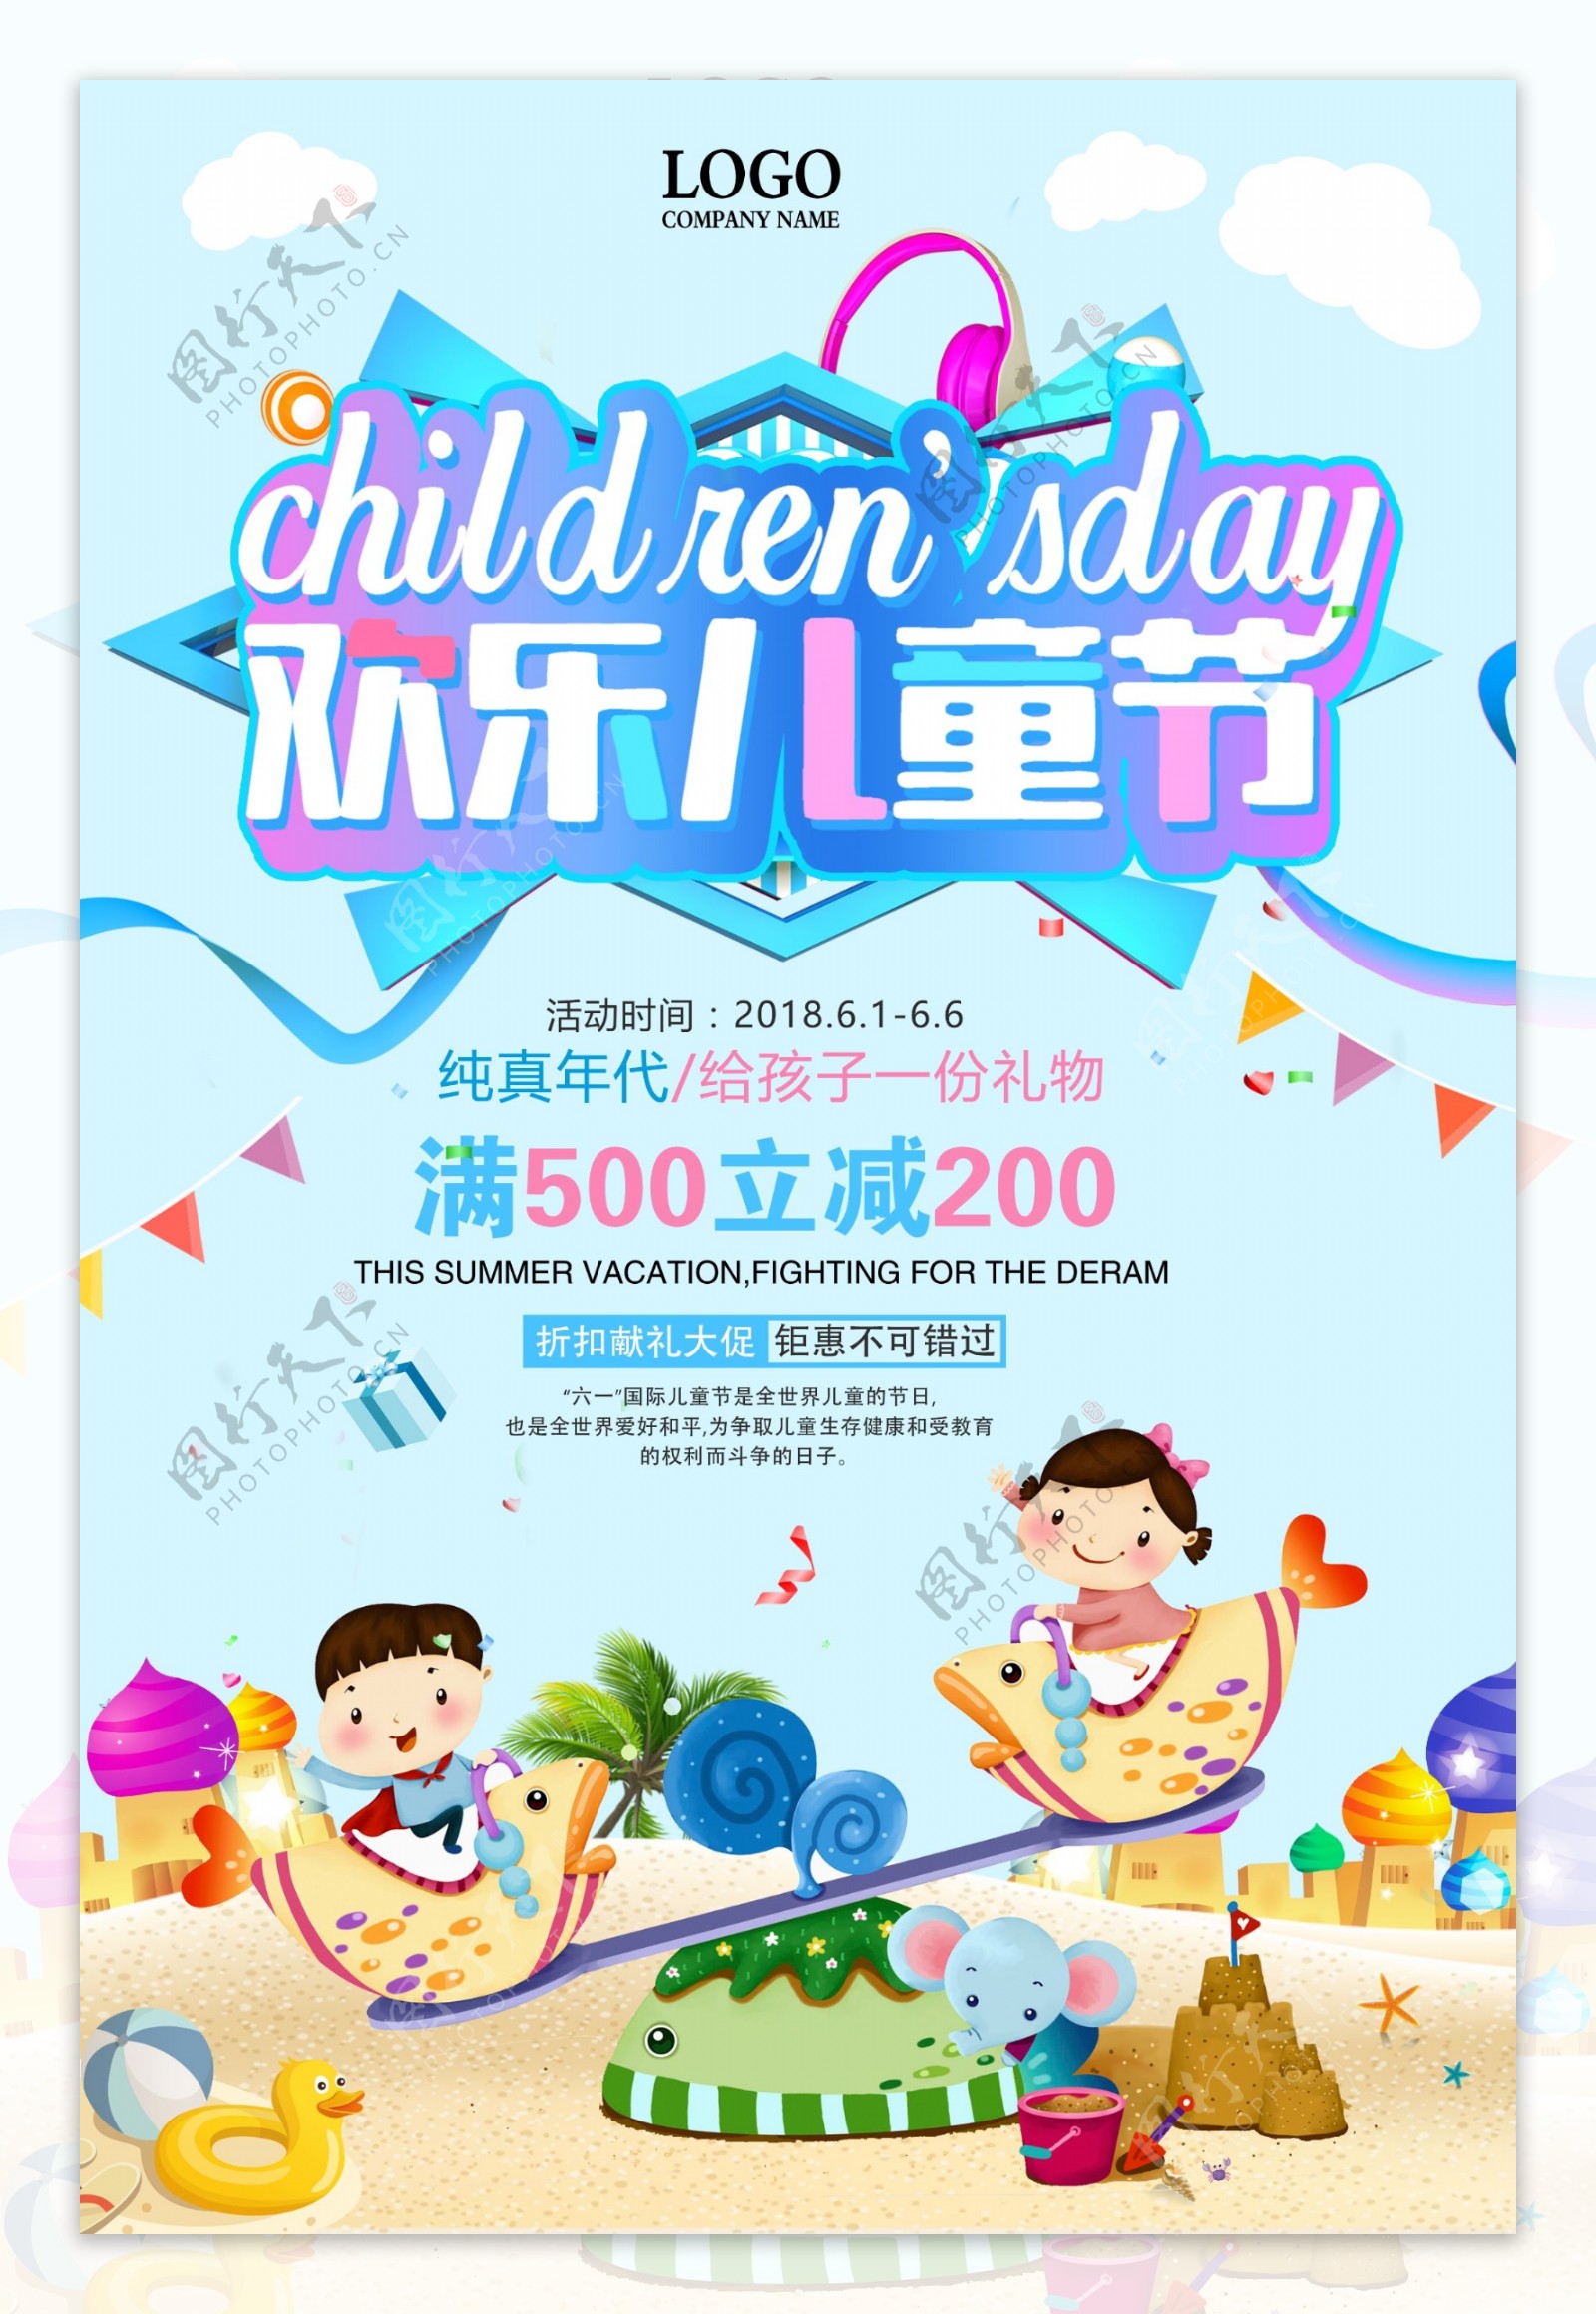 61儿童节欢乐过六一节日促销海报